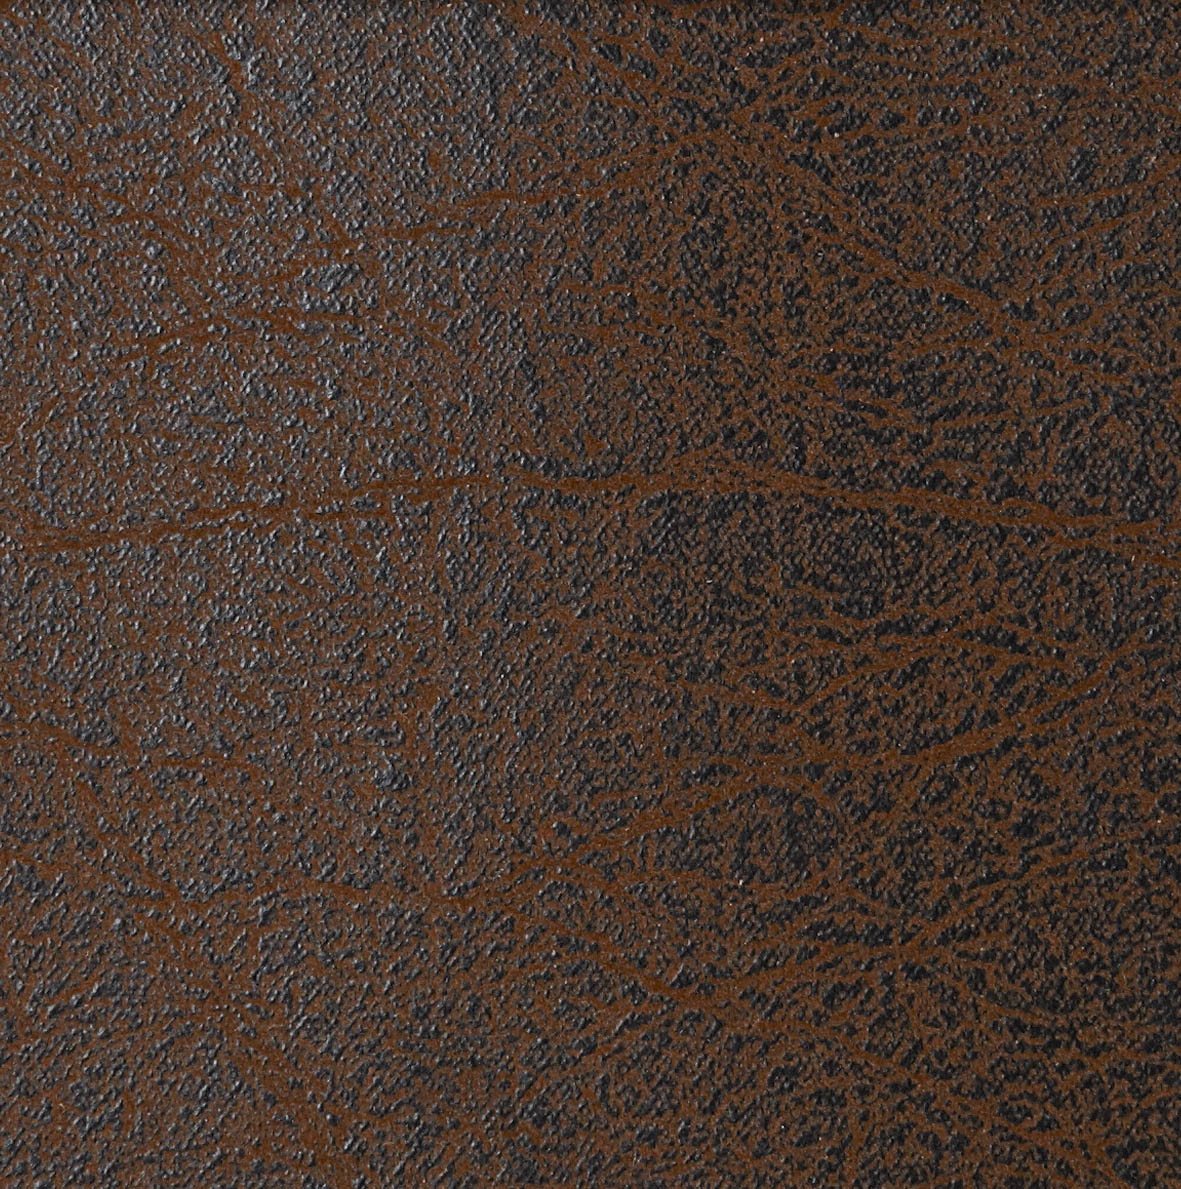 461 Leather Look Brown Vintage